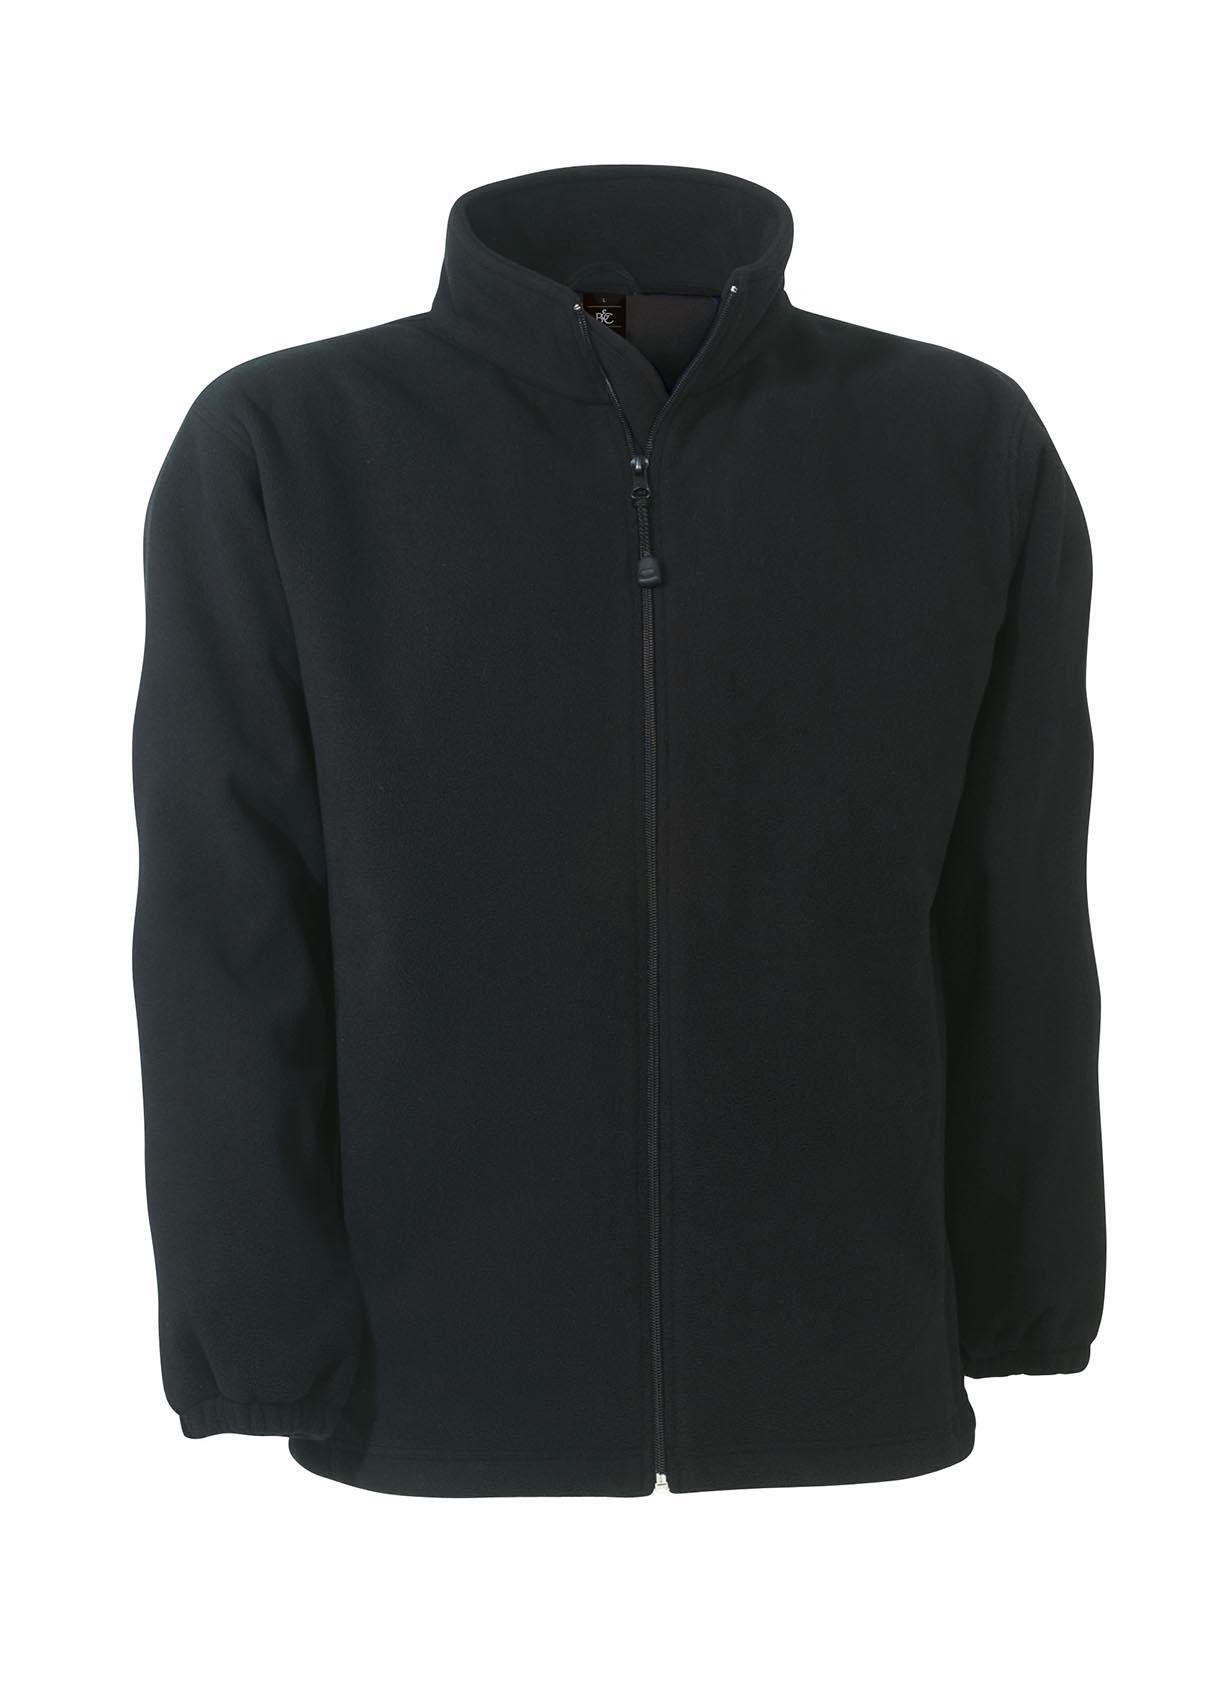 Fleece jas voor mannen zwart windproof en waterbestendig